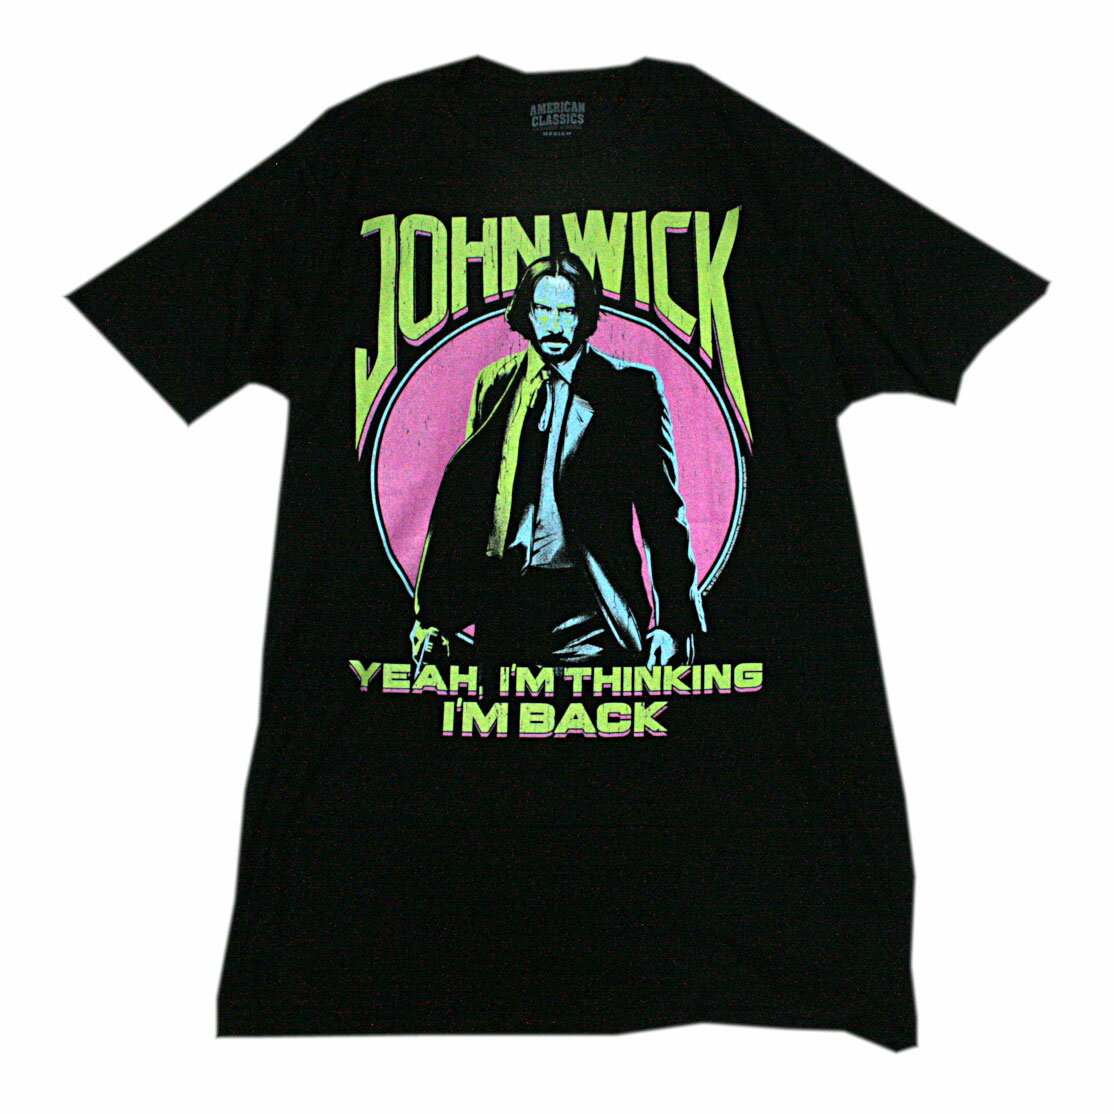 ジョン・ウィック Yeah, I'm thinking I'm back. Tシャツ(Black)